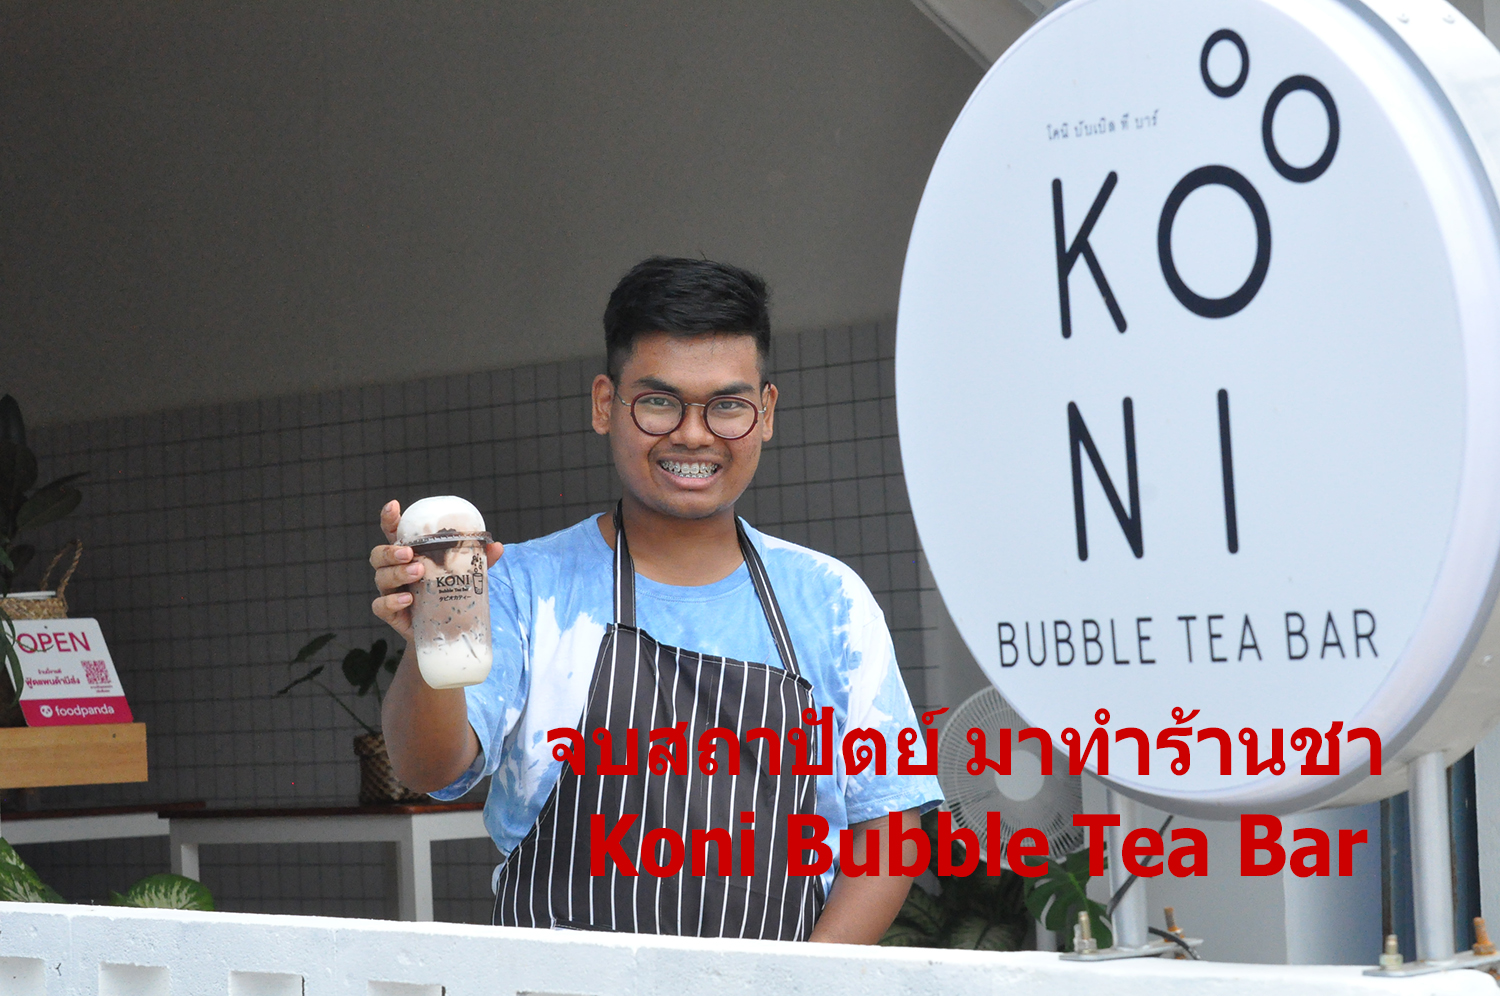 จบสถาปัตย์ มาทำร้านชา : Koni Bubble Tea Bar